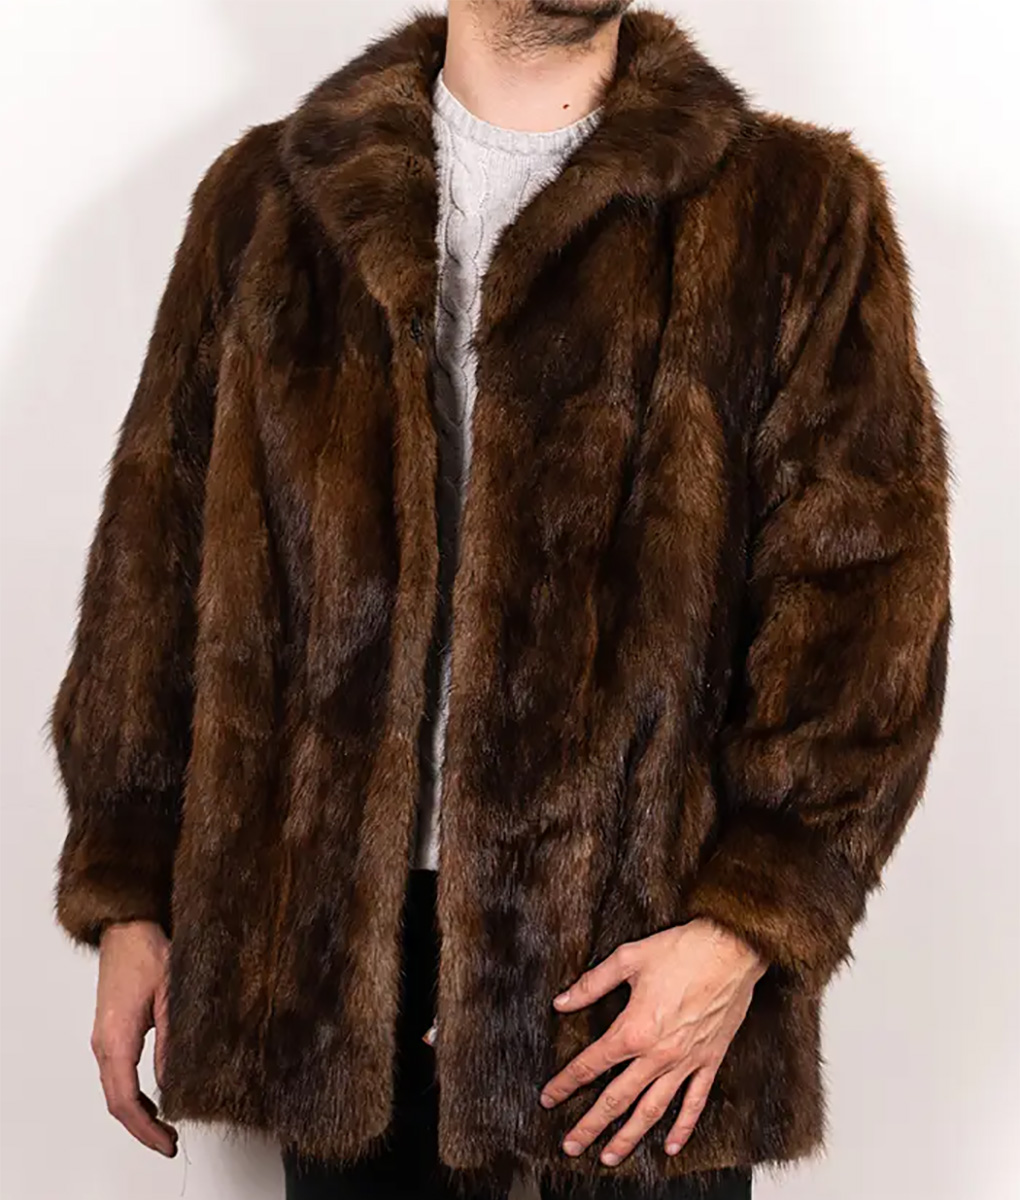 Brown Fur Vintage Coat for Men